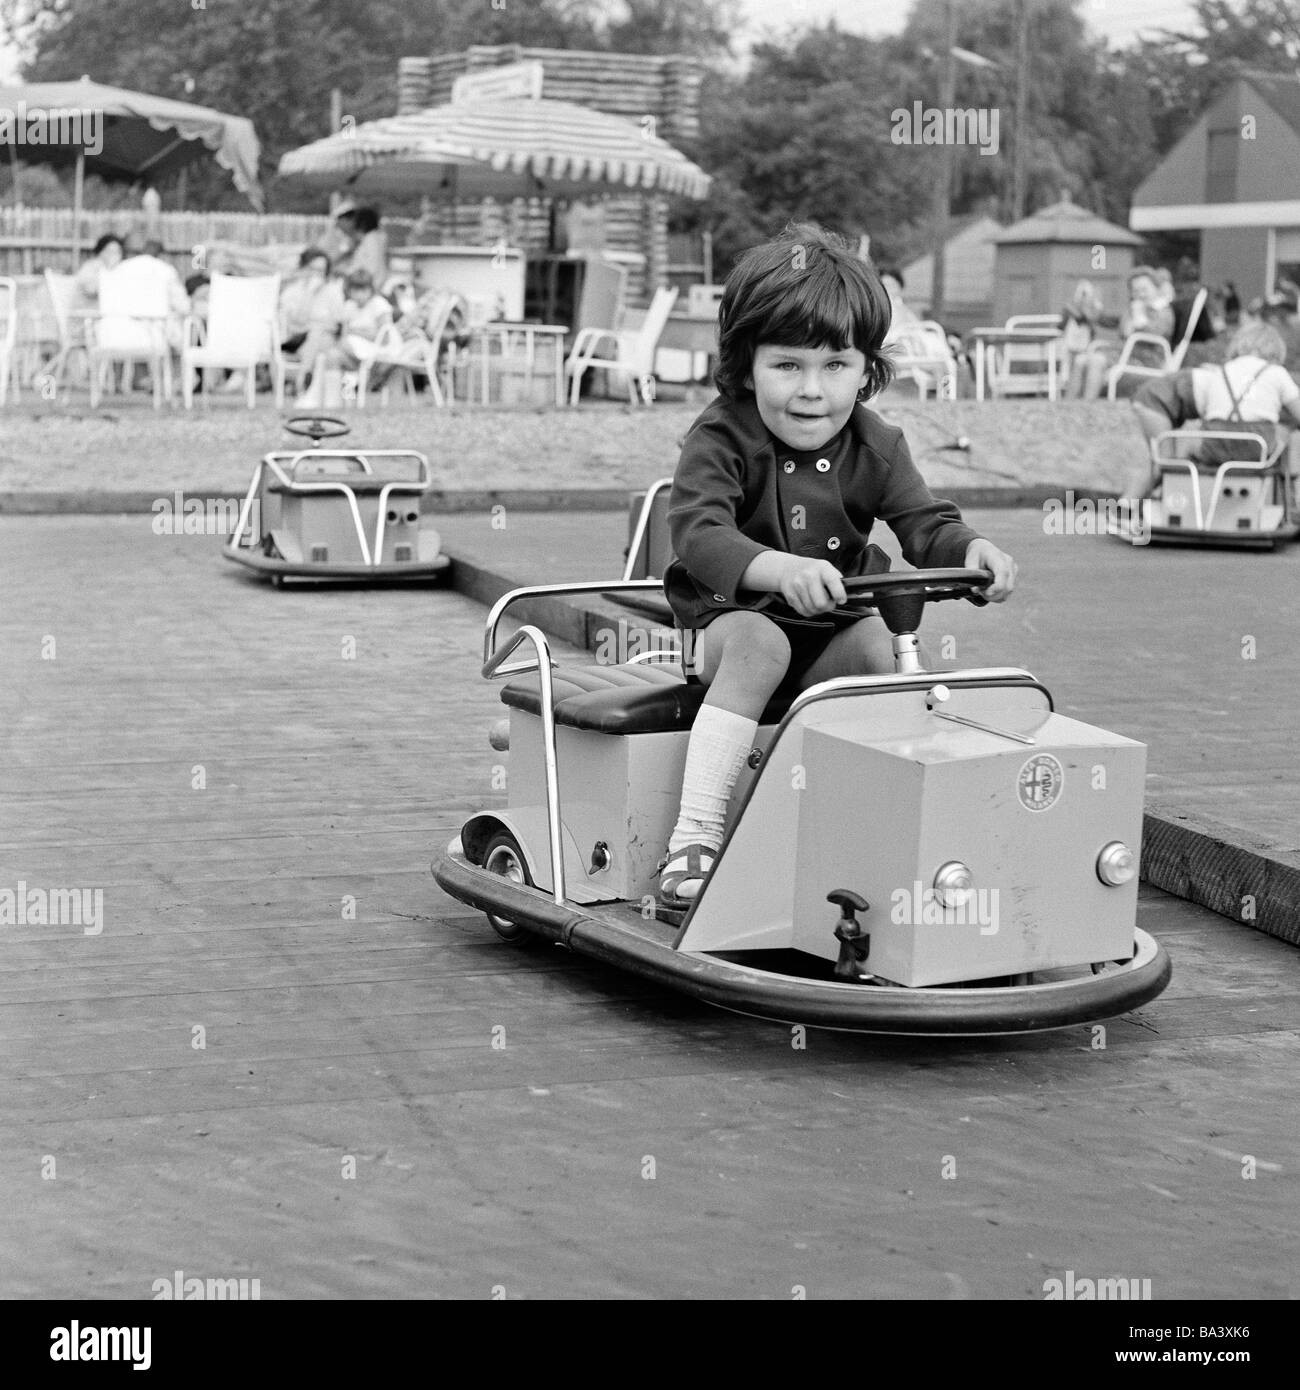 70, fotografía en blanco y negro, gente, niños, niñas pequeñas unidades con un modelo de coche, dodgem coches, juegos para niños, entre las edades de 3 a 4 años de stock - Alamy